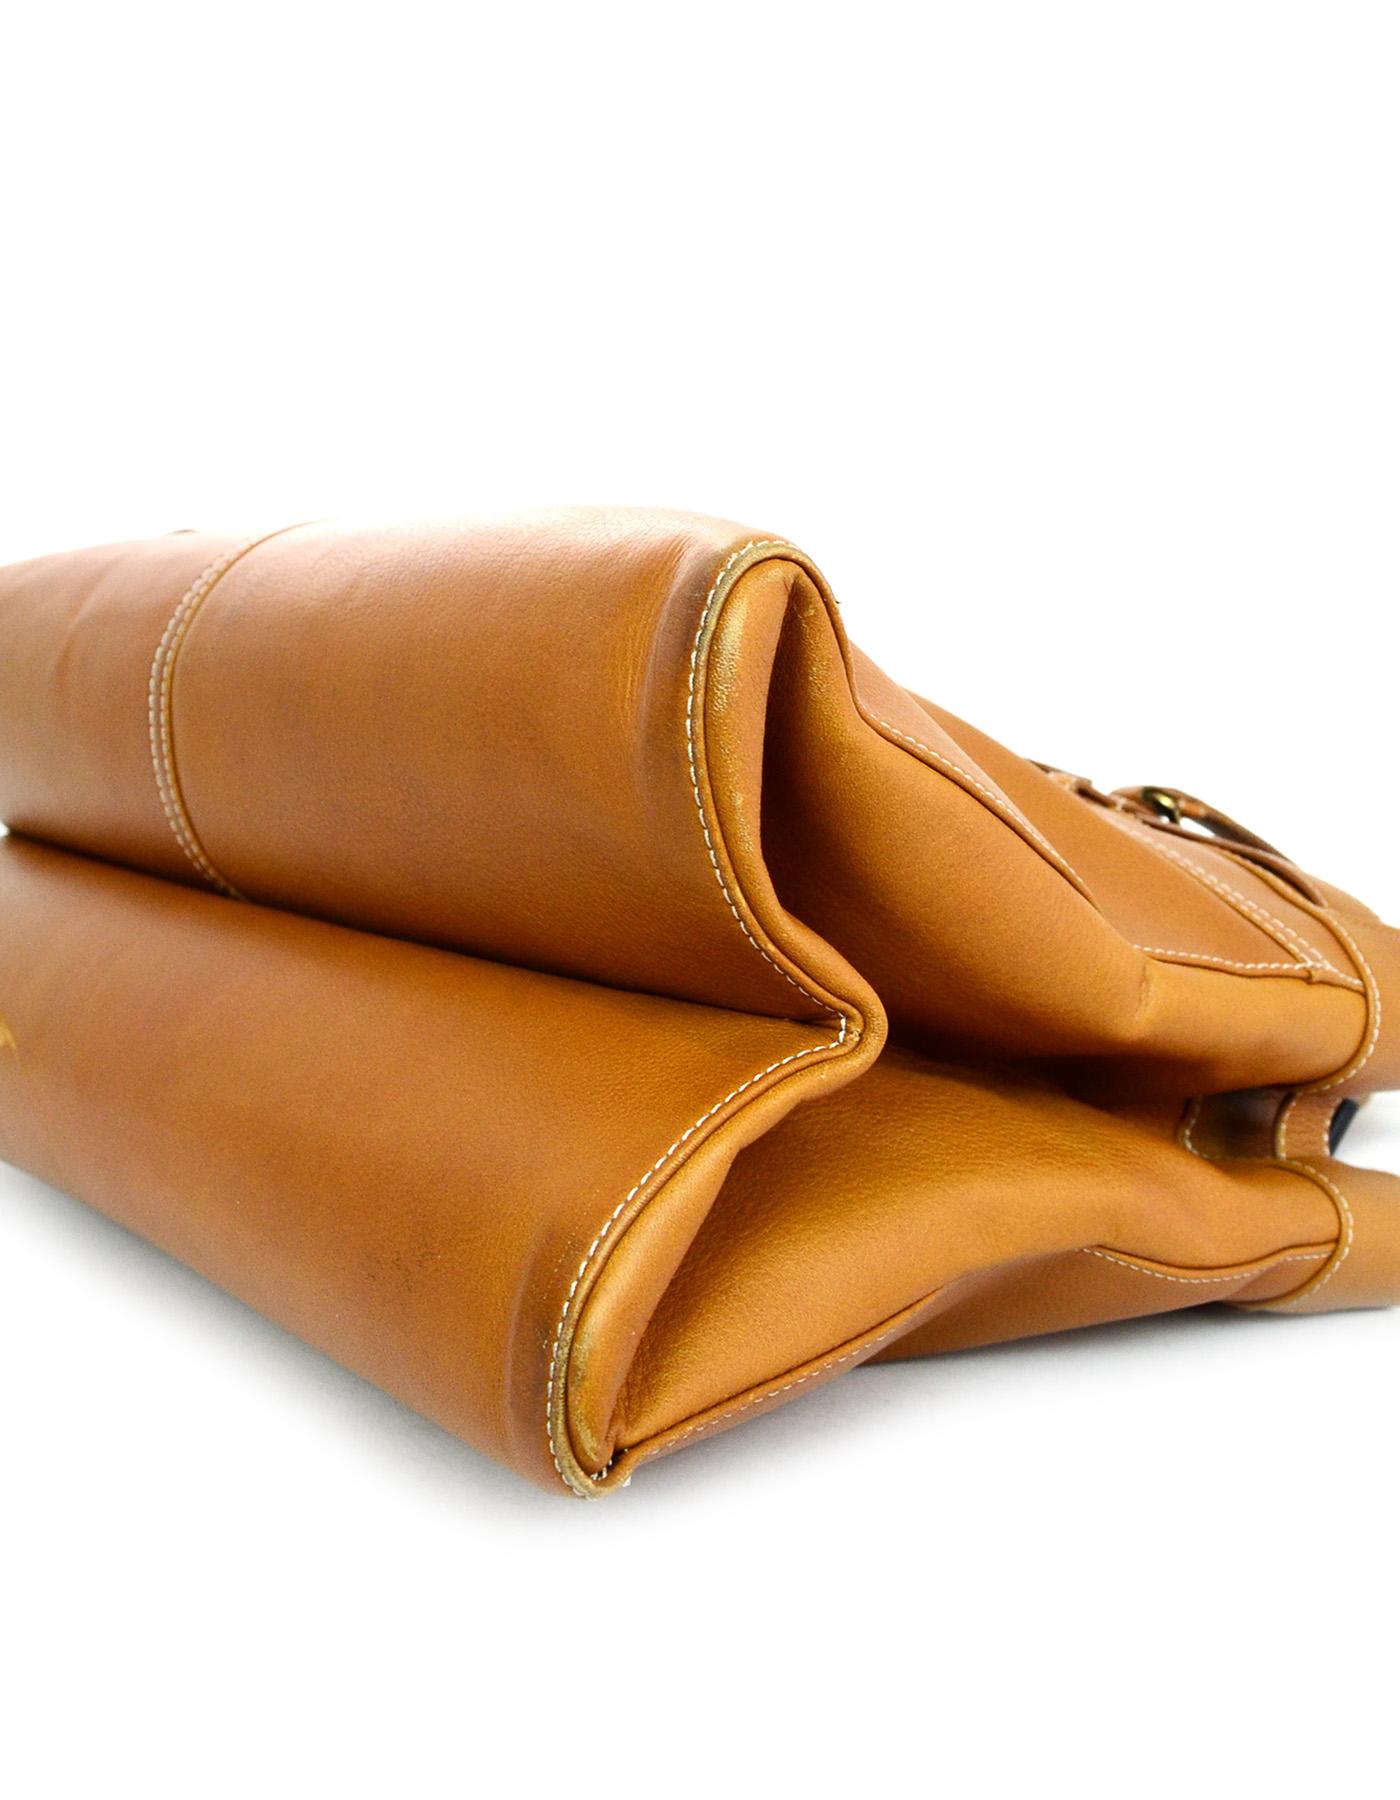 Brown Christian Dior Tan Leather Jeans Pocket Tote Shoulder Bag